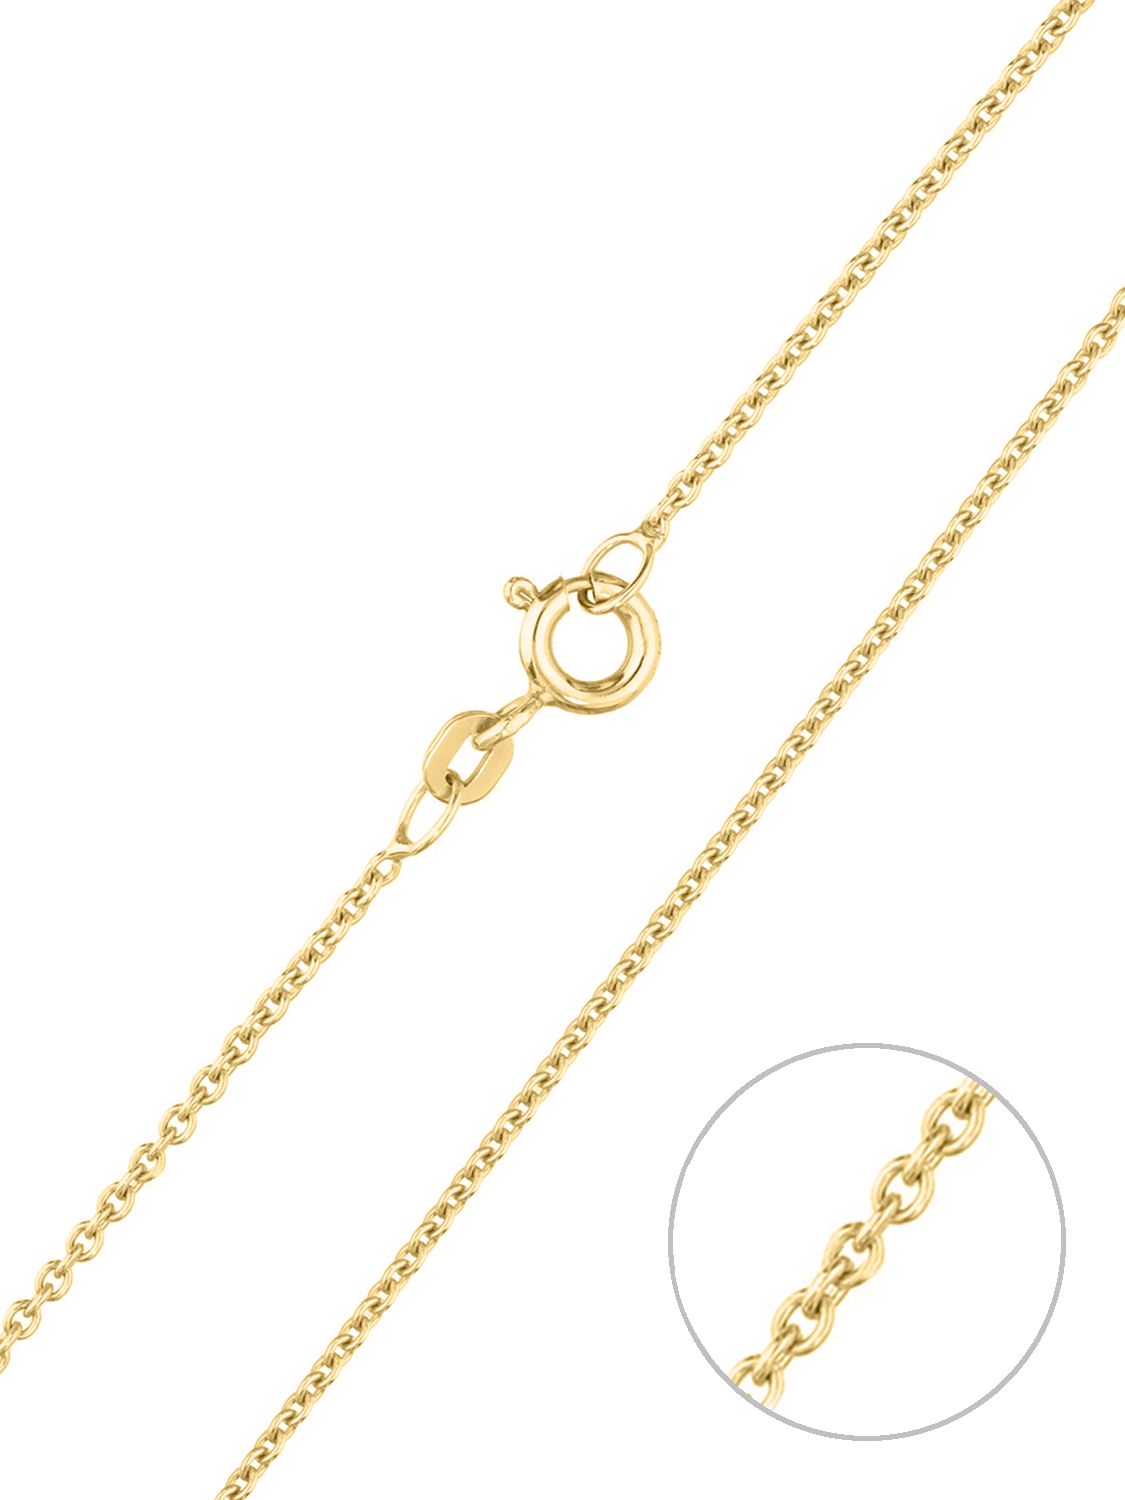 Kordoubt - Halskette 585 Gelbgold Federring - Breite 1,5 mm - Länge 40 cm